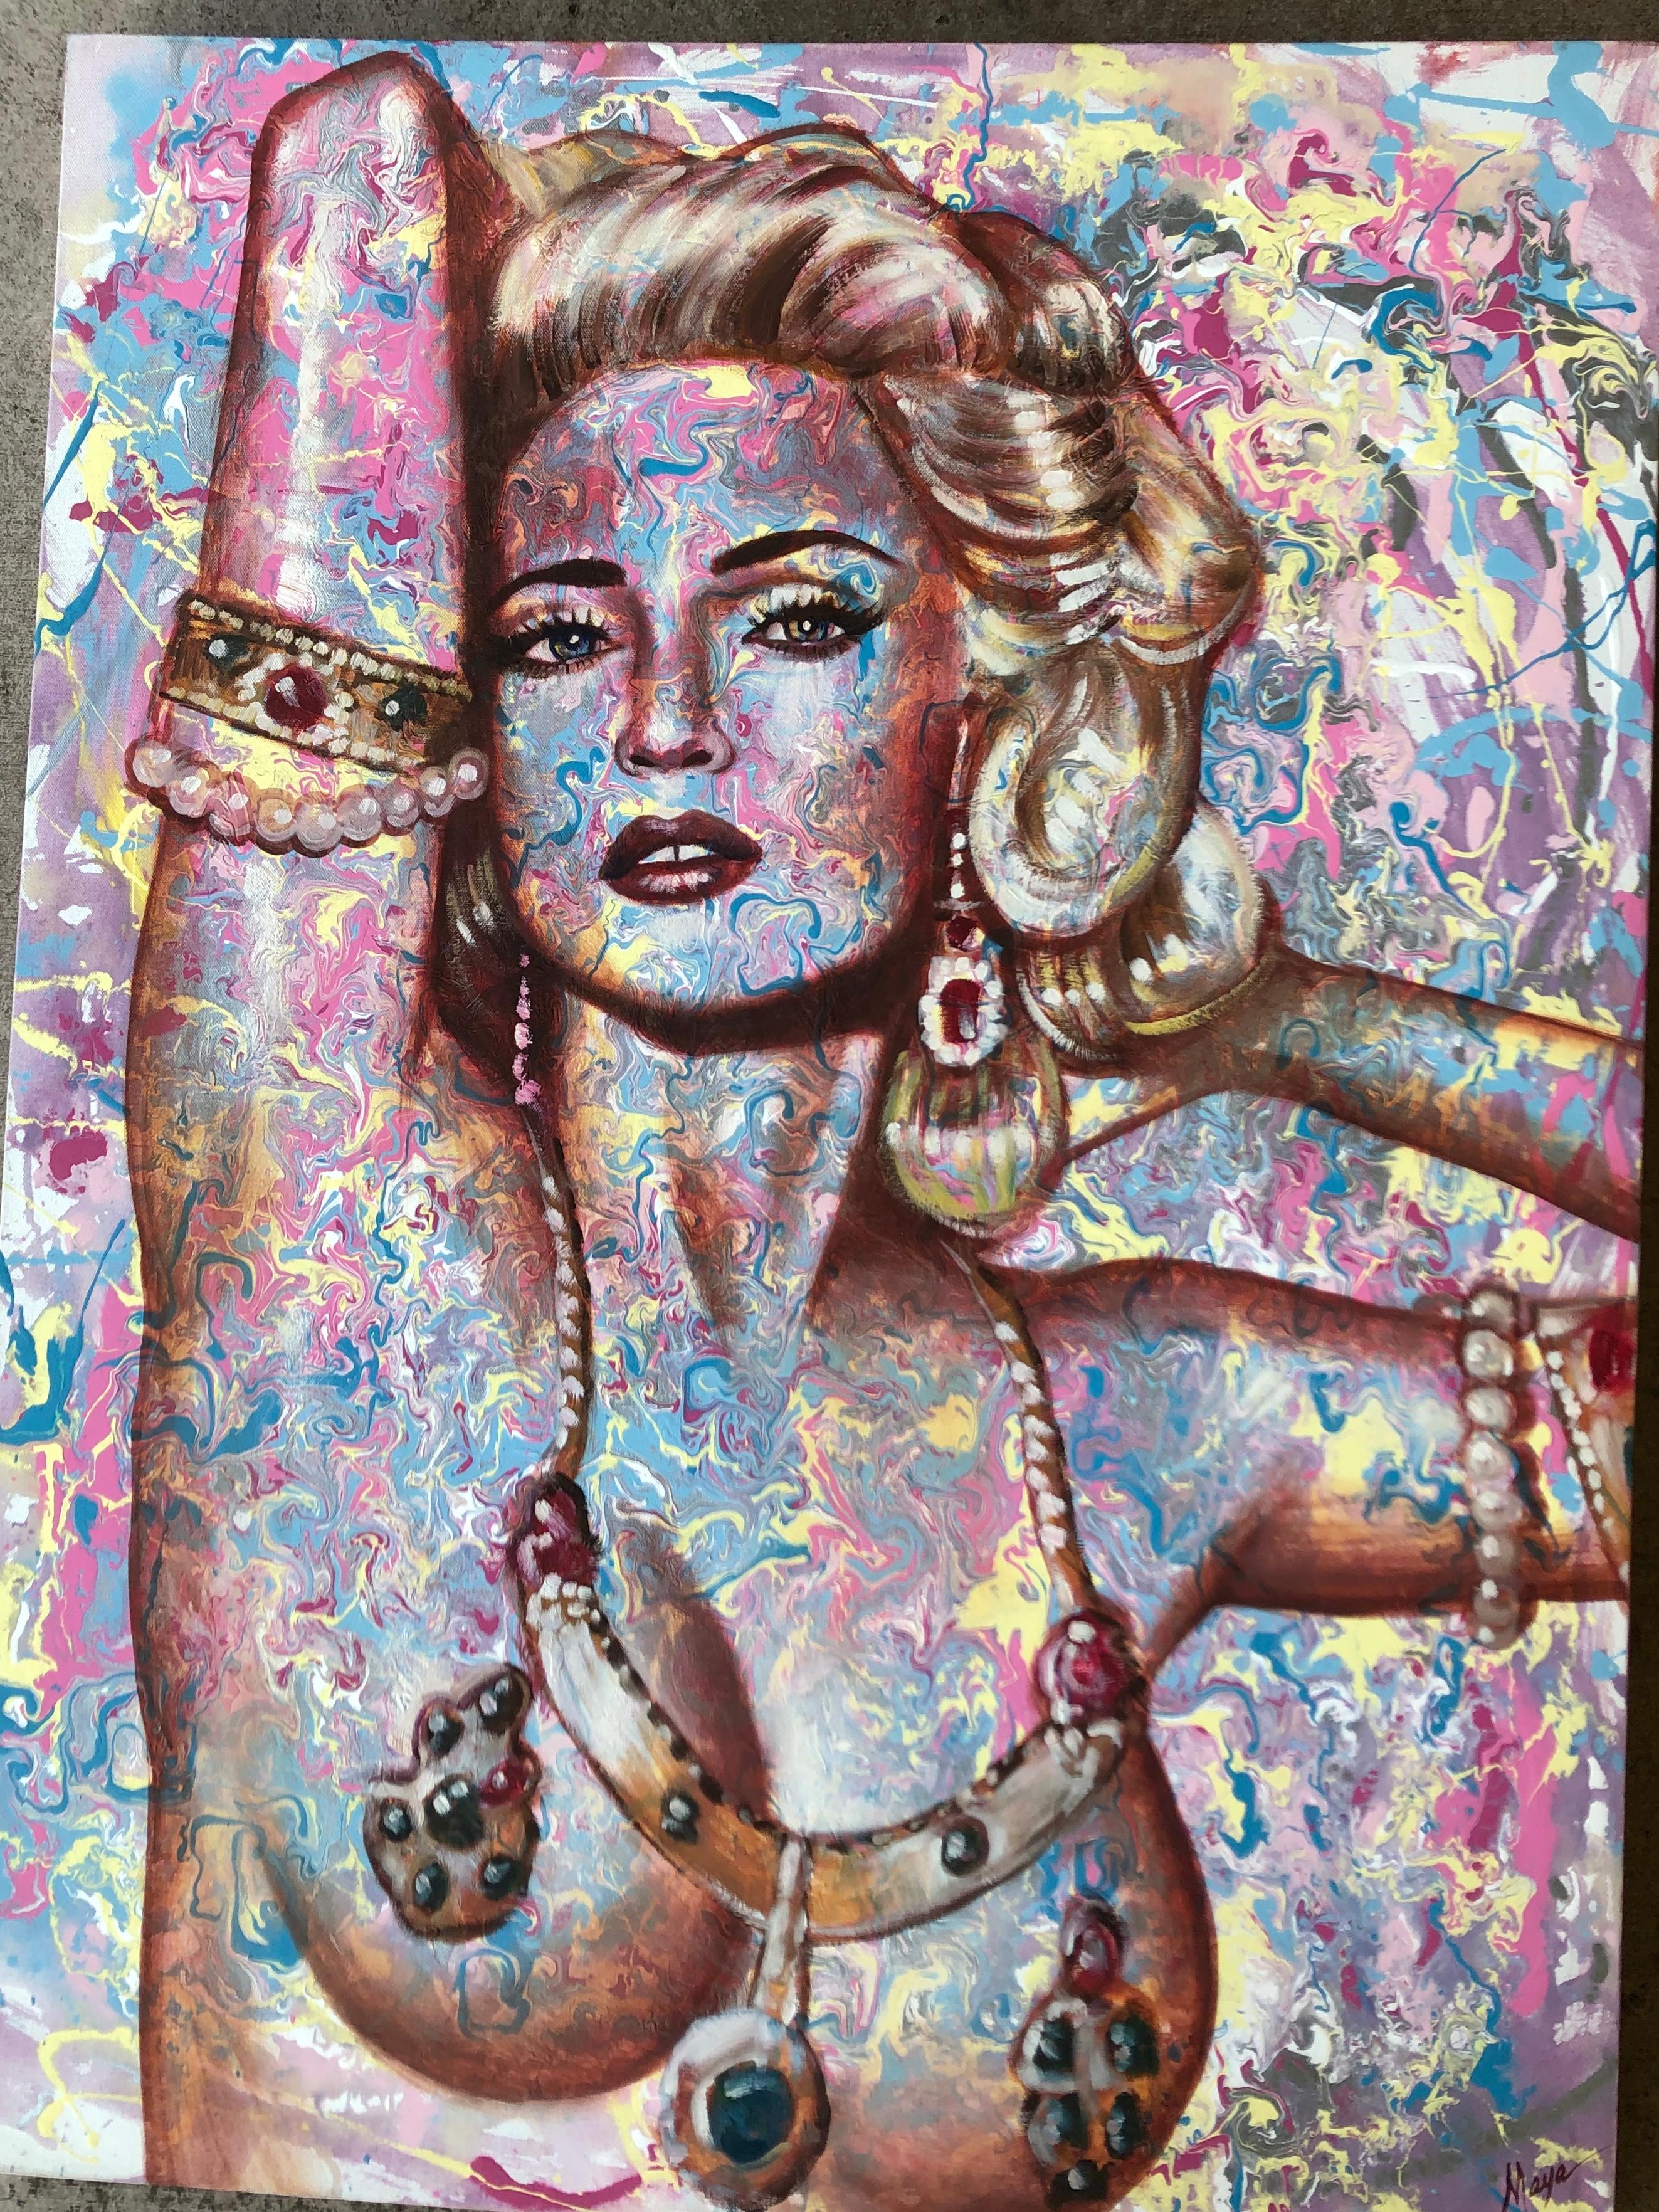 Fabulous ursprünglichen abstrakten Pop-Art-Gemälde auf Leinwand von berühmten Gesang Sensation, Madonna, von berühmten Promi-Porträt Künstler, Maya Spielman, in saftigen Schattierungen von rosa, türkis, gelb. Signiert 